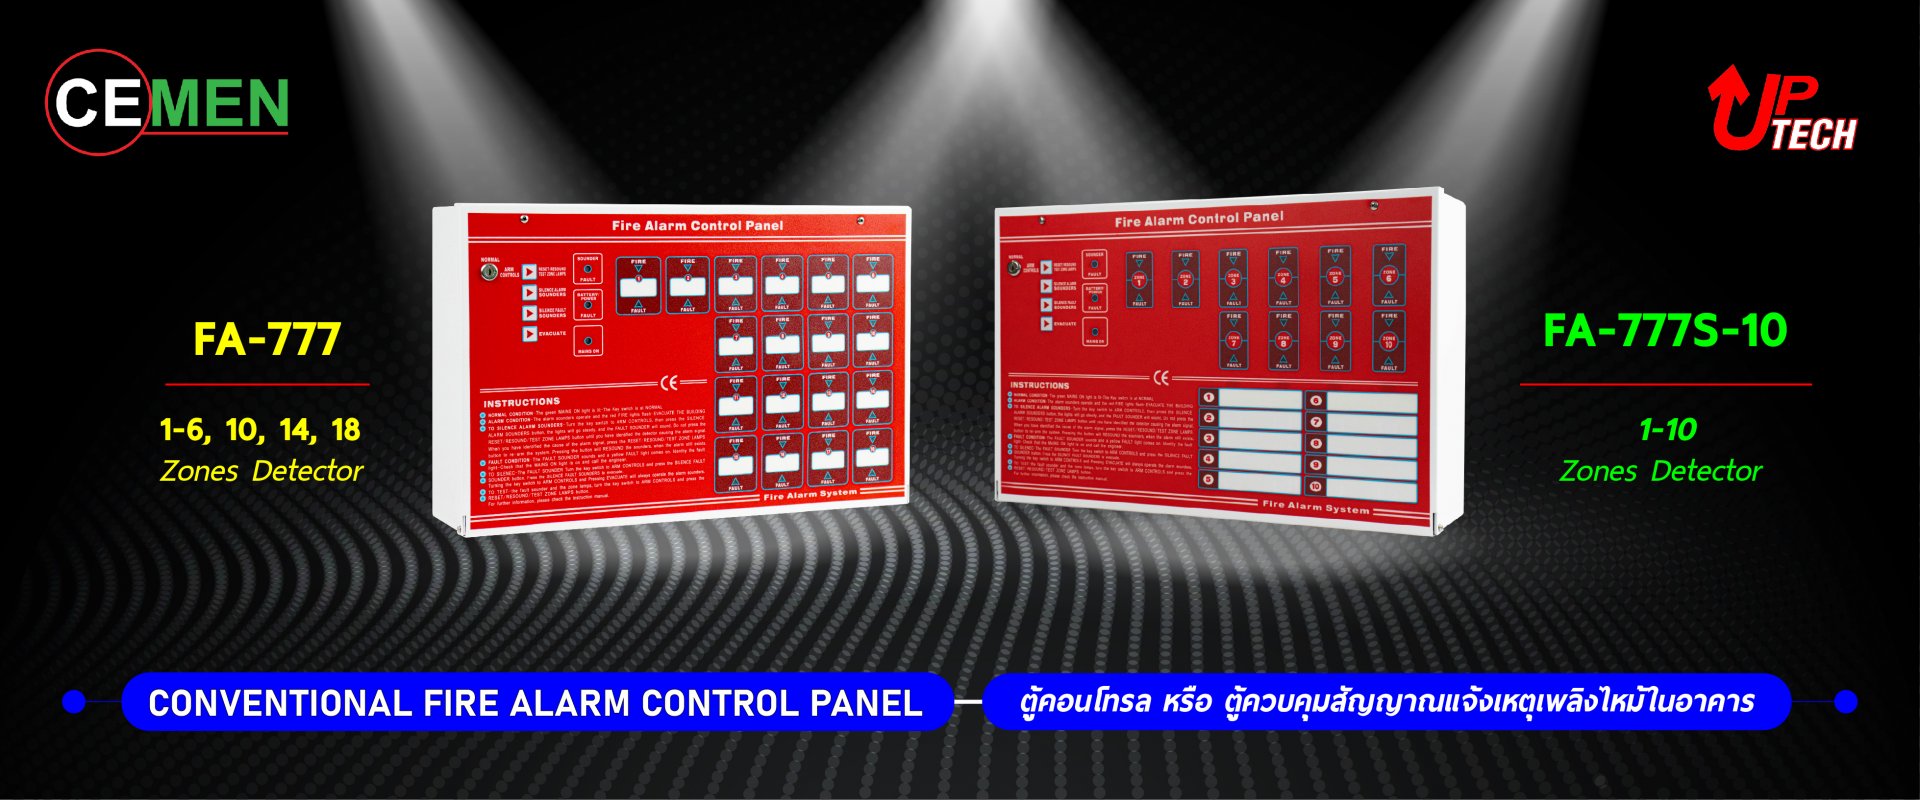 Fire Alarm Control Panel (ตู้คอนโทรล) FA-777 and FA-777S-10 Red